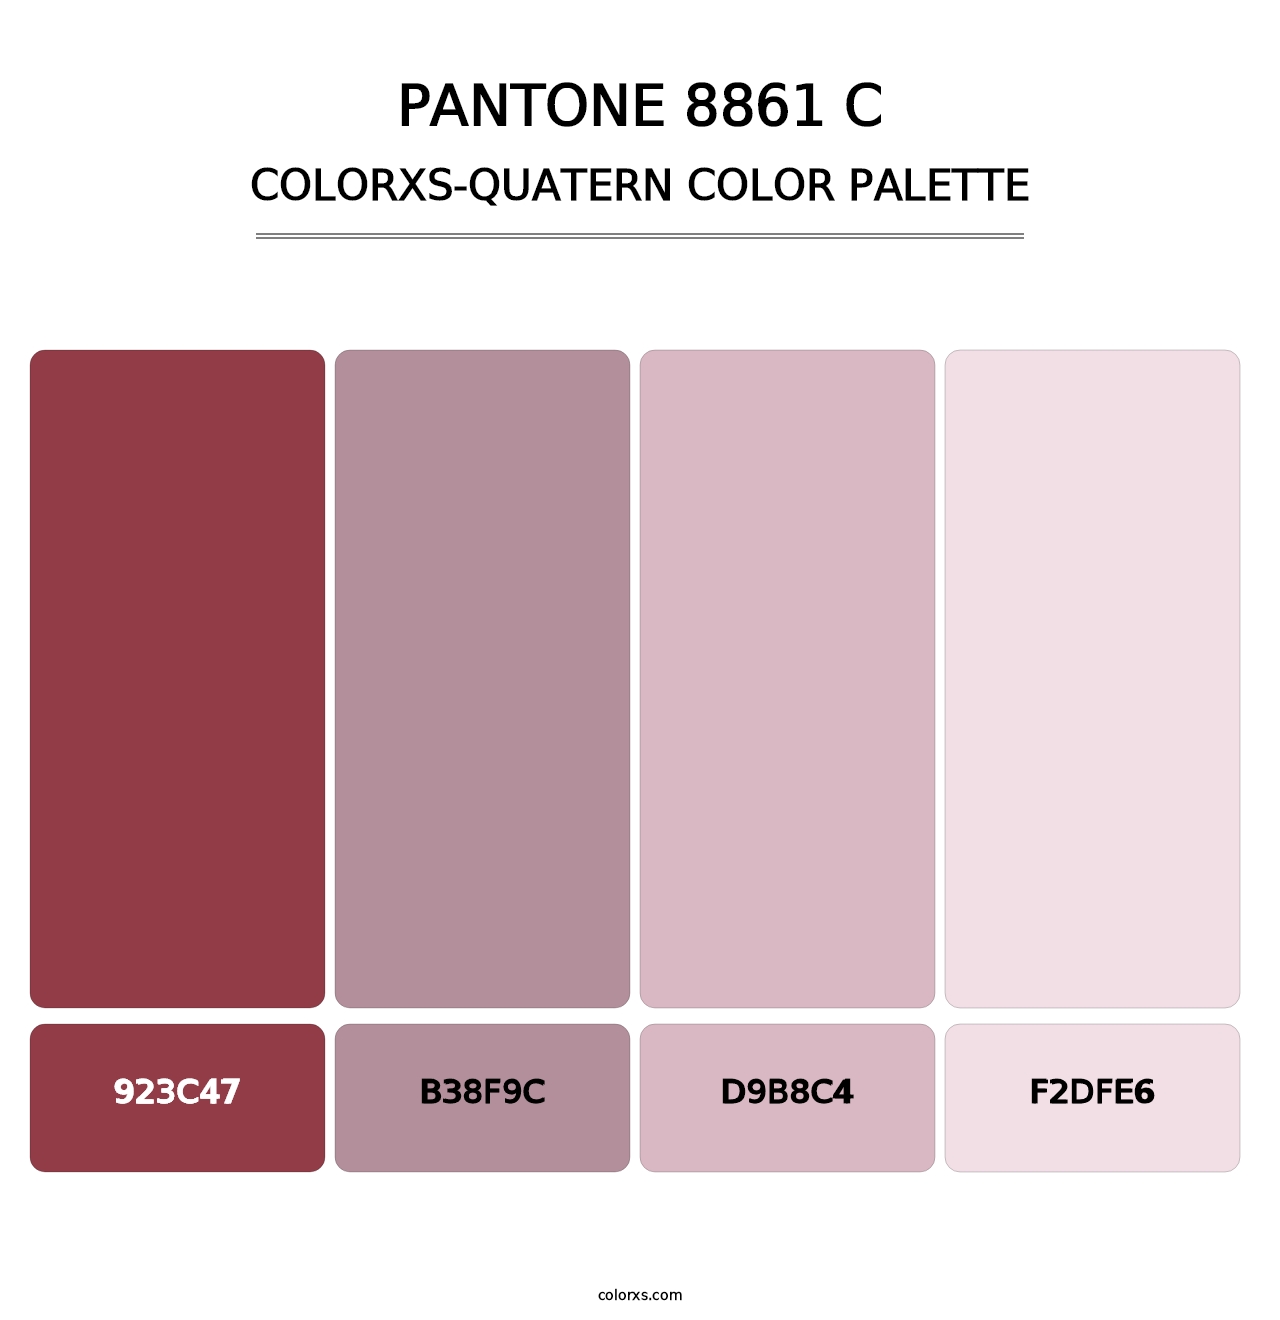 PANTONE 8861 C - Colorxs Quatern Palette